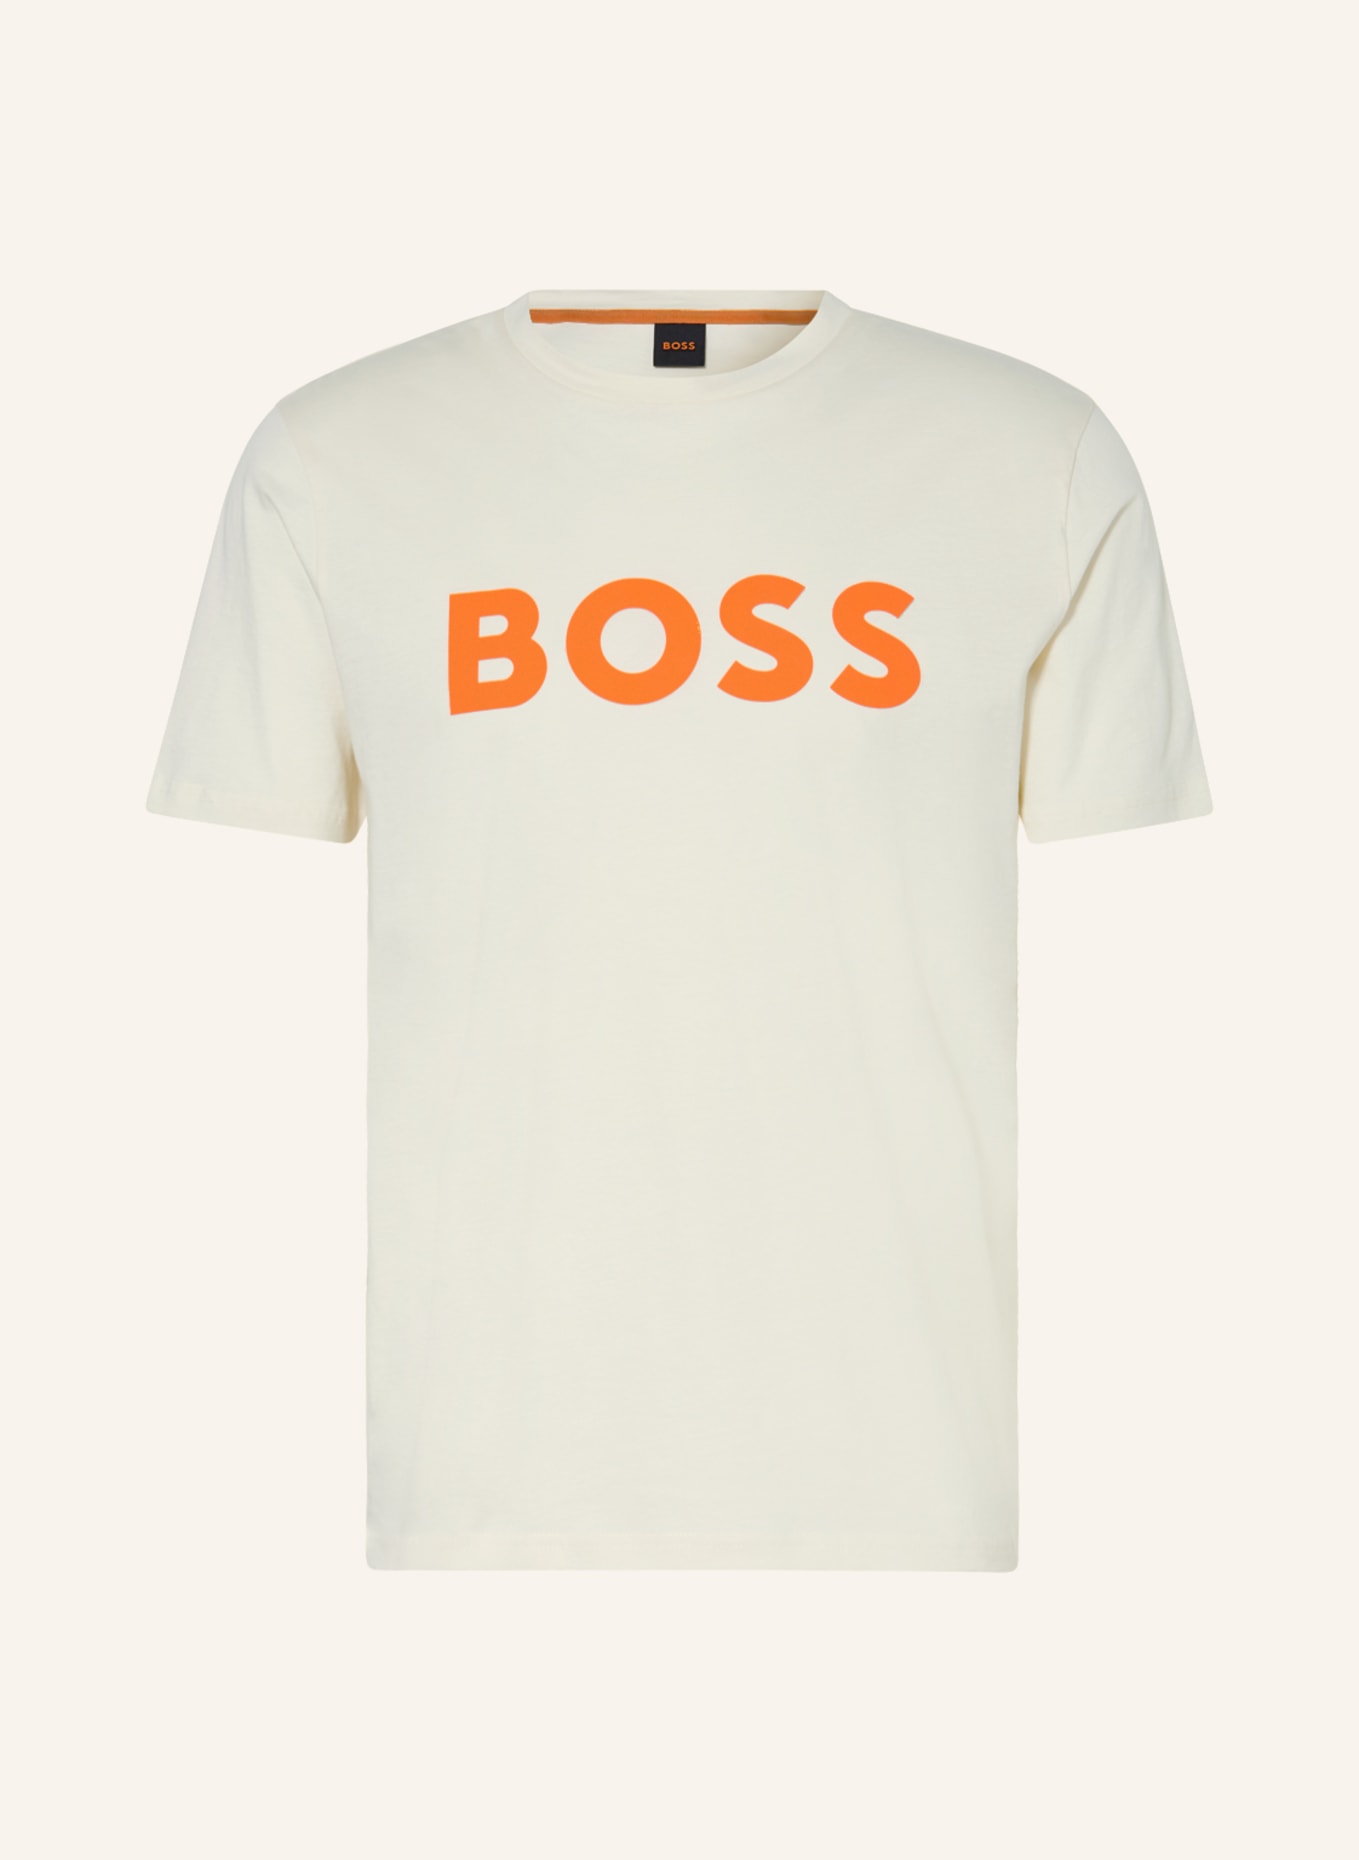 BOSS T-Shirt THINKING, Farbe: CREME/ NEONORANGE (Bild 1)